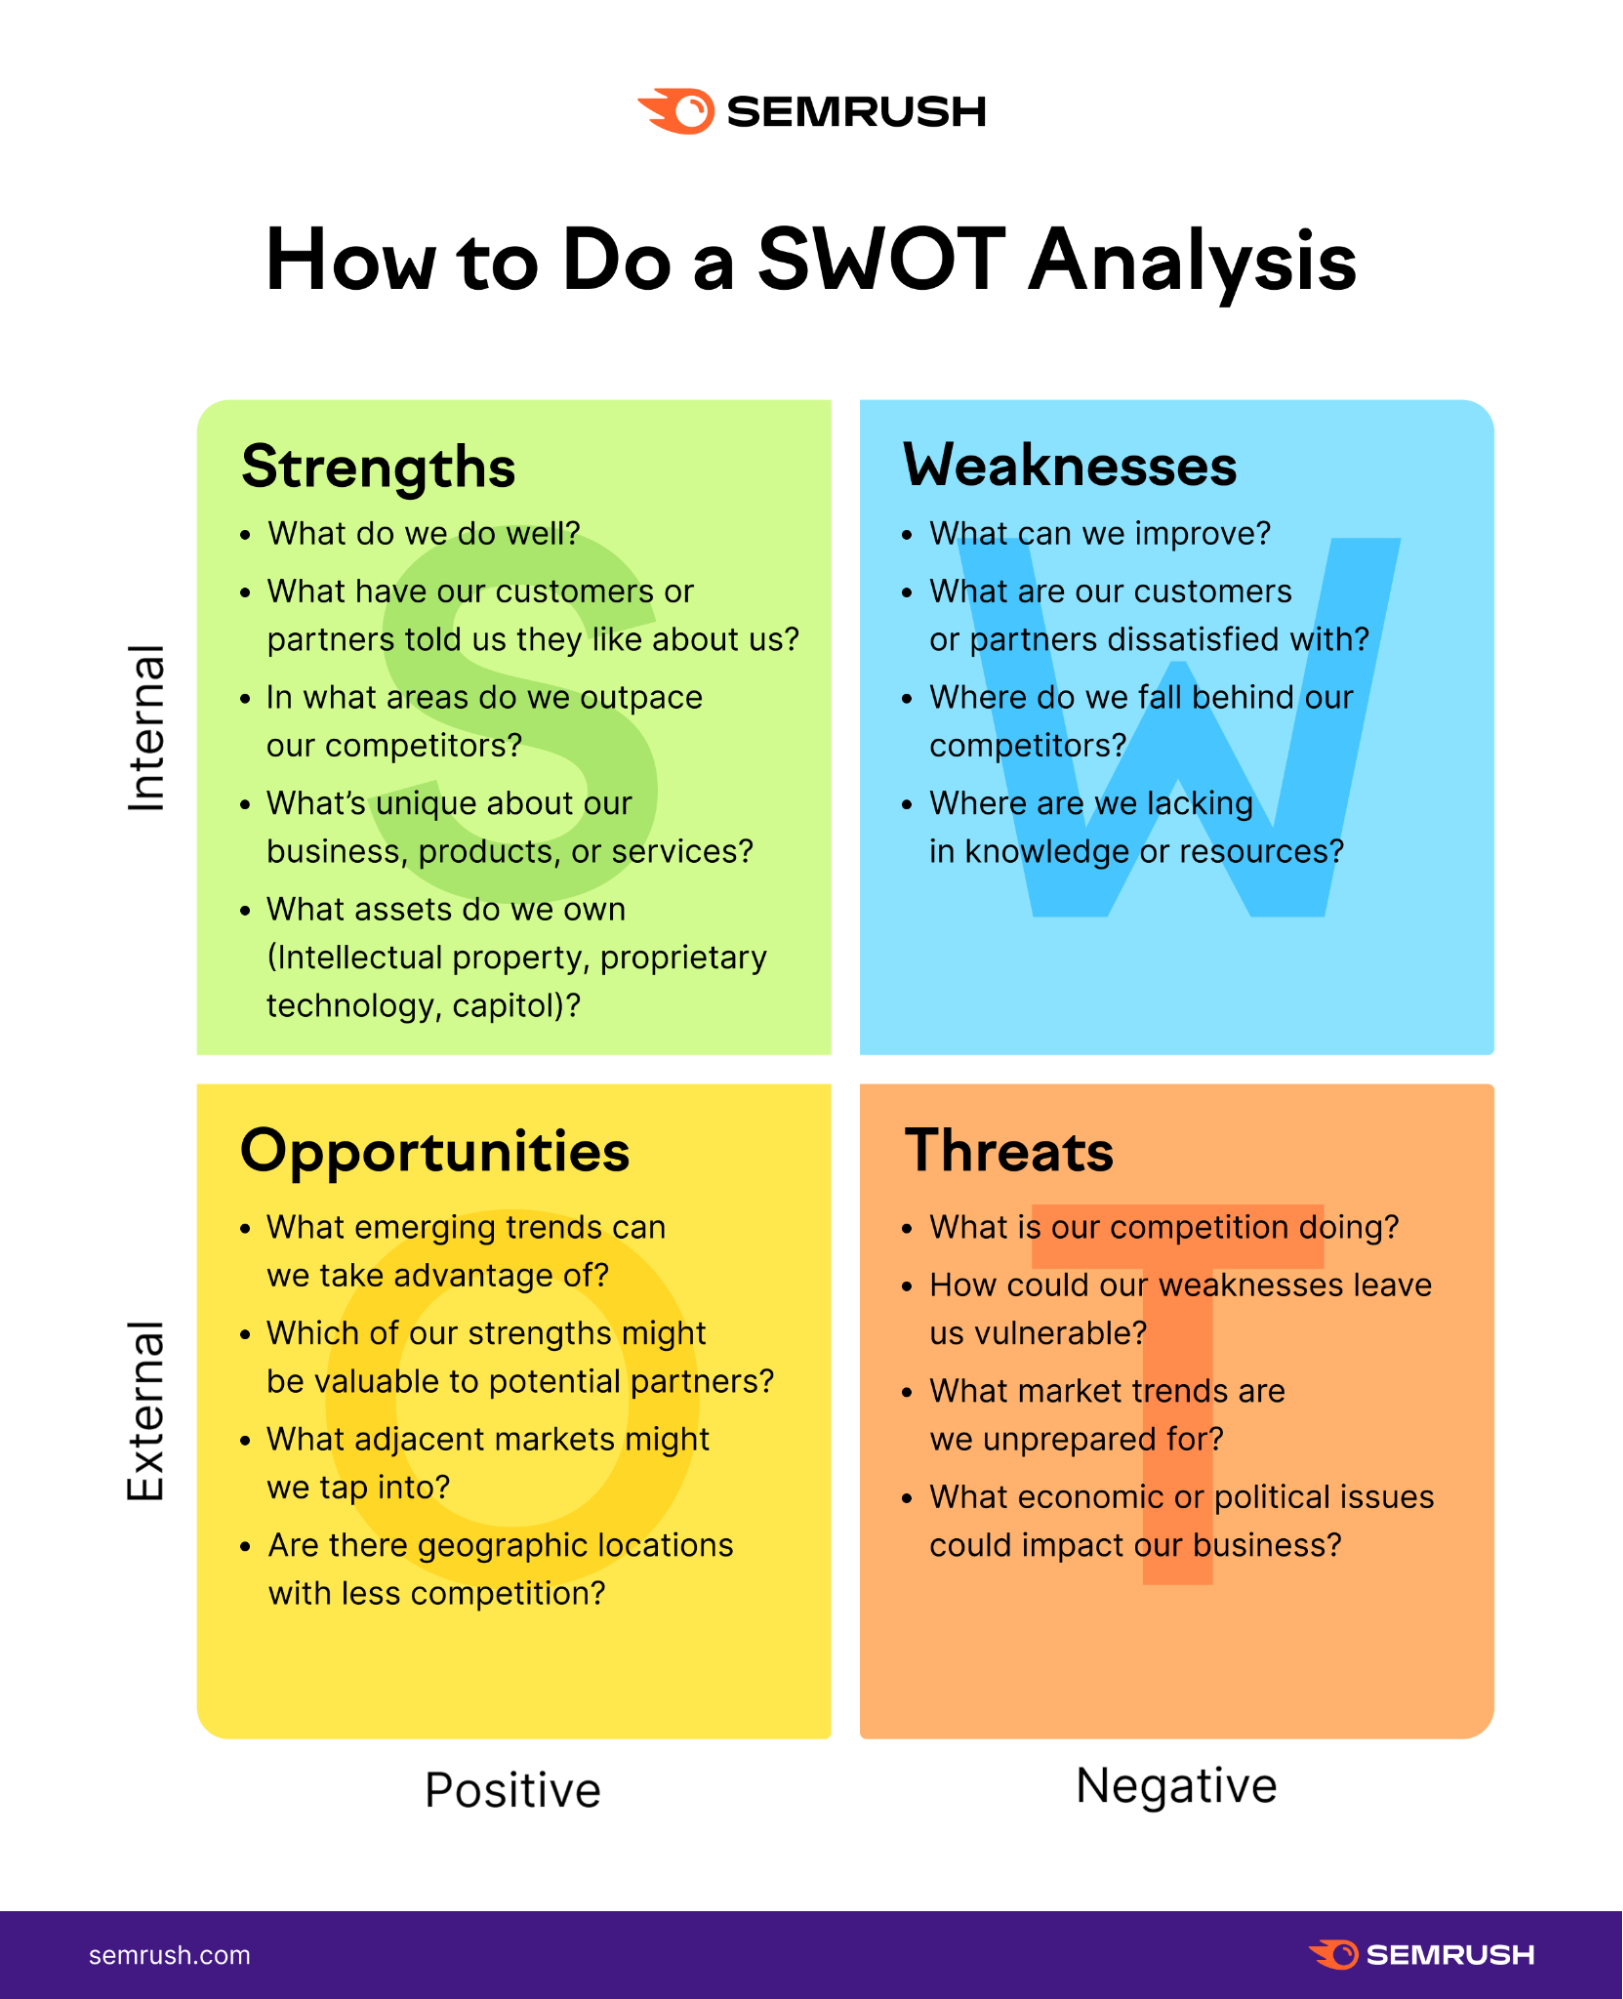 ตัวอย่างการทำ SWOT Analysis